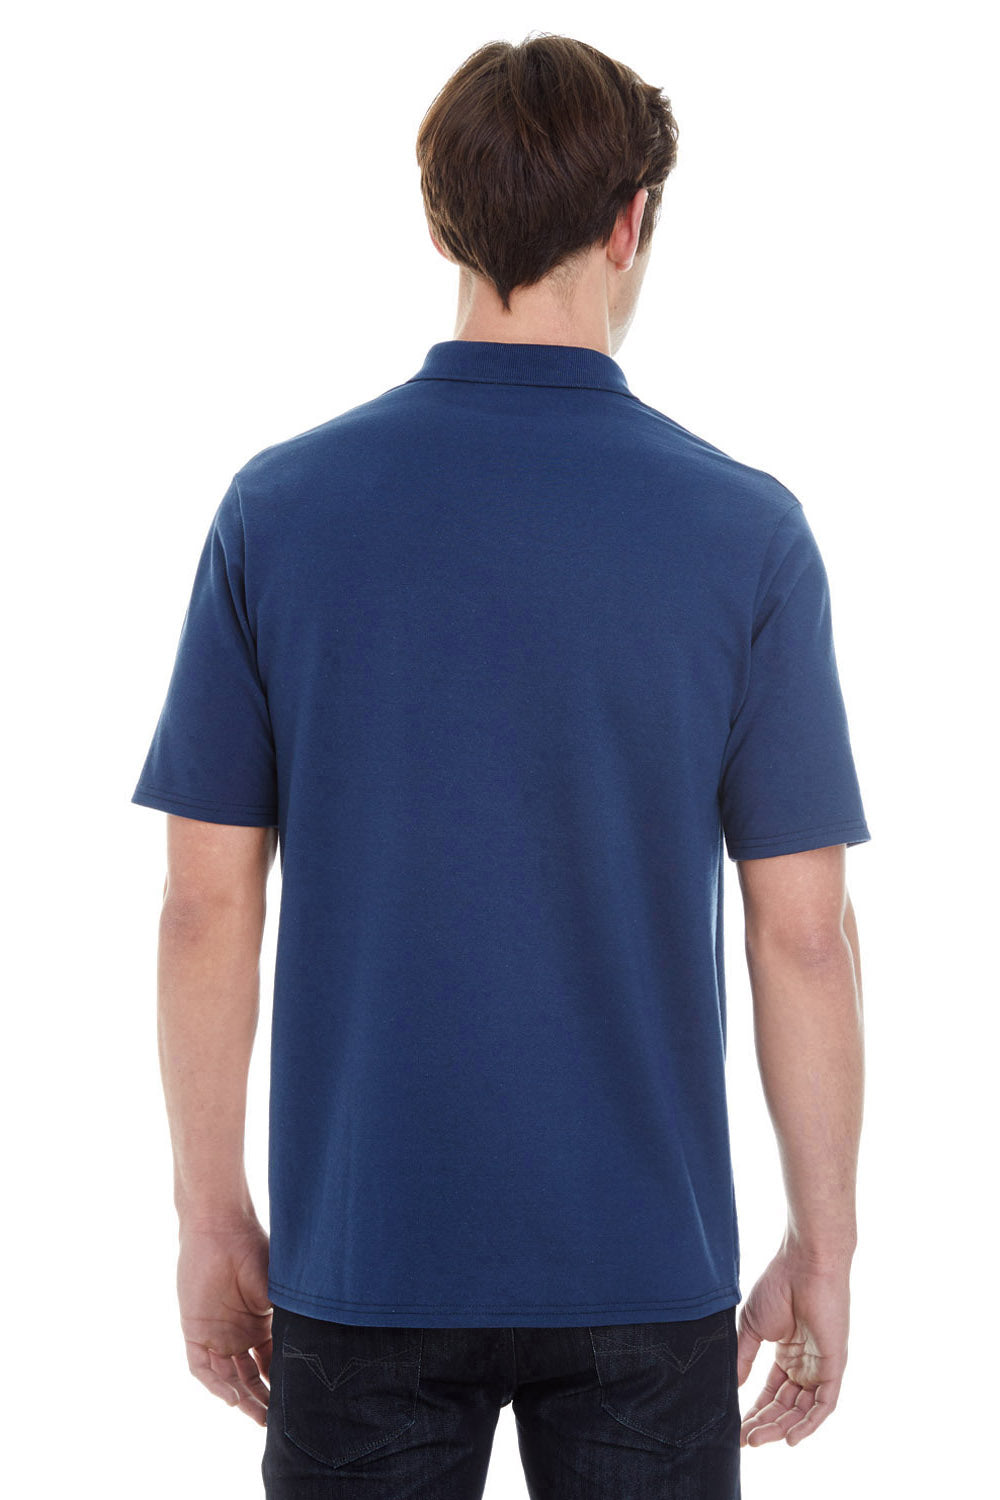 Hanes Women's X-Temp w/ Fresh IQ Short Sleeve Pique Polo Shirt